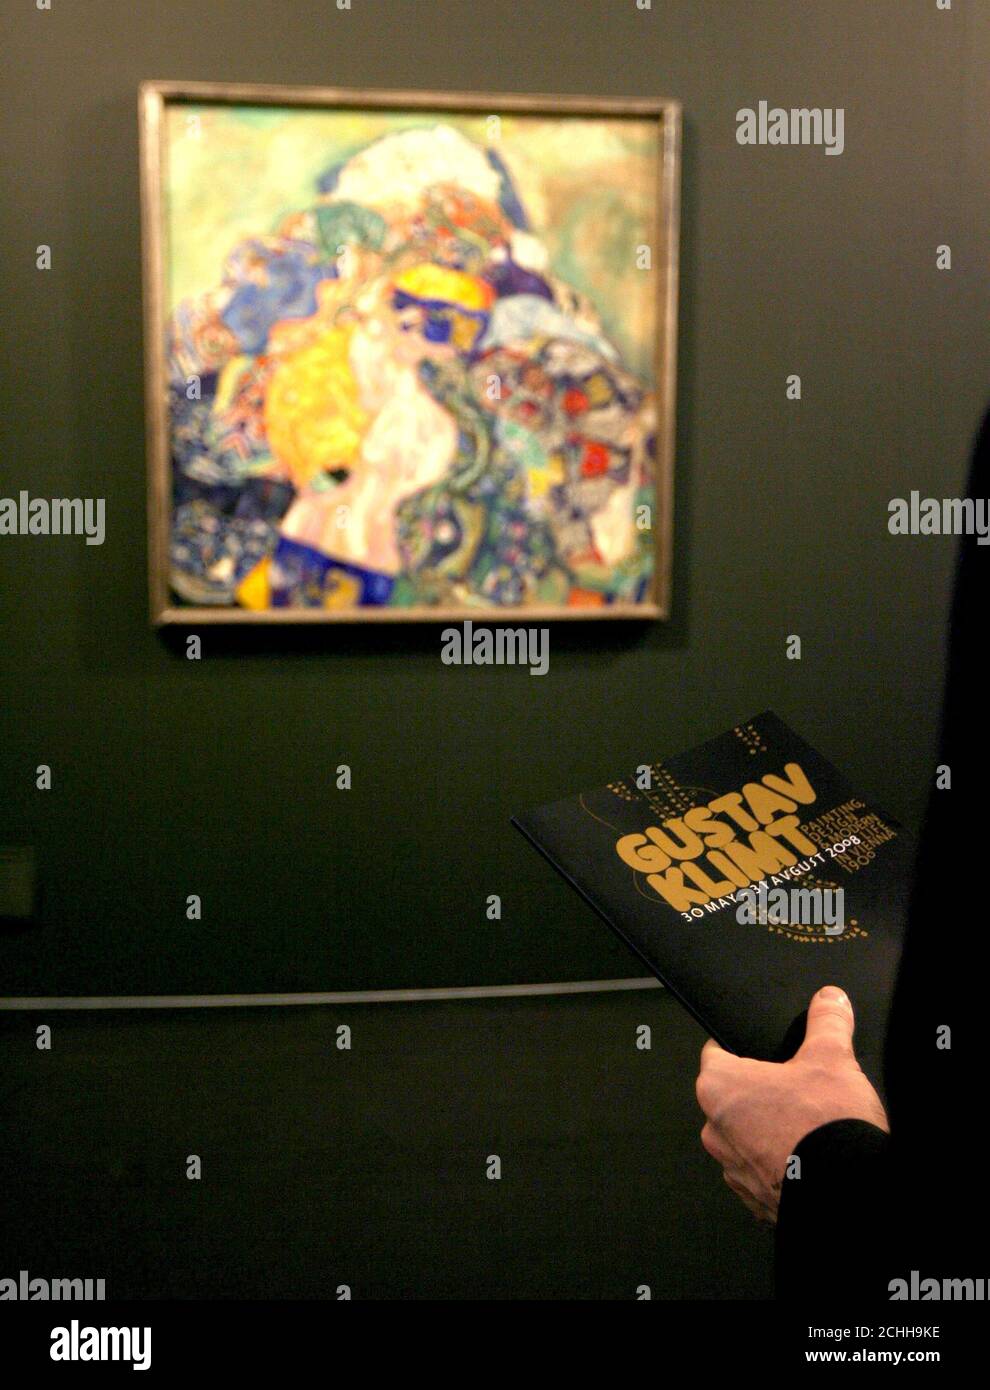 Baby (Cradle) von Gustav Klimt, in der Tate Art Gallery in Liverpool, wo die erste umfassende Ausstellung von Gustav Klimts Werk in Großbritannien zu sehen ist, in einer Ausstellung mit dem Titel Painting, Design and Modern Life in Wien 1900, die am Freitag für die Öffentlichkeit geöffnet wird. Stockfoto